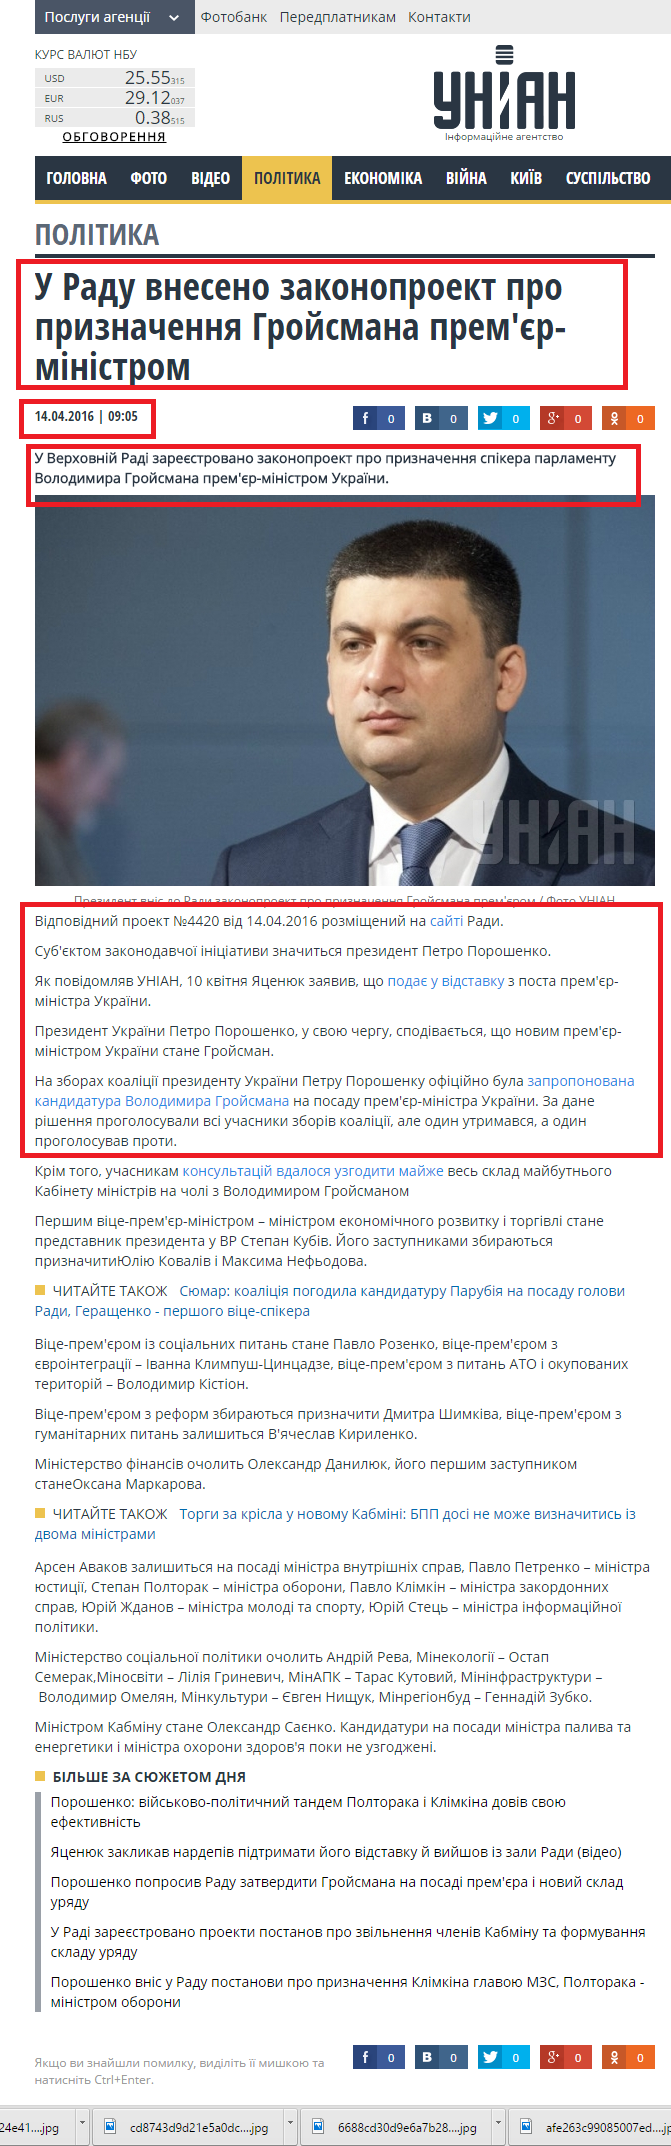 http://www.unian.ua/politics/1318817-u-radu-vneseno-zakonoproekt-pro-priznachennya-groysmana-premer-ministrom.html